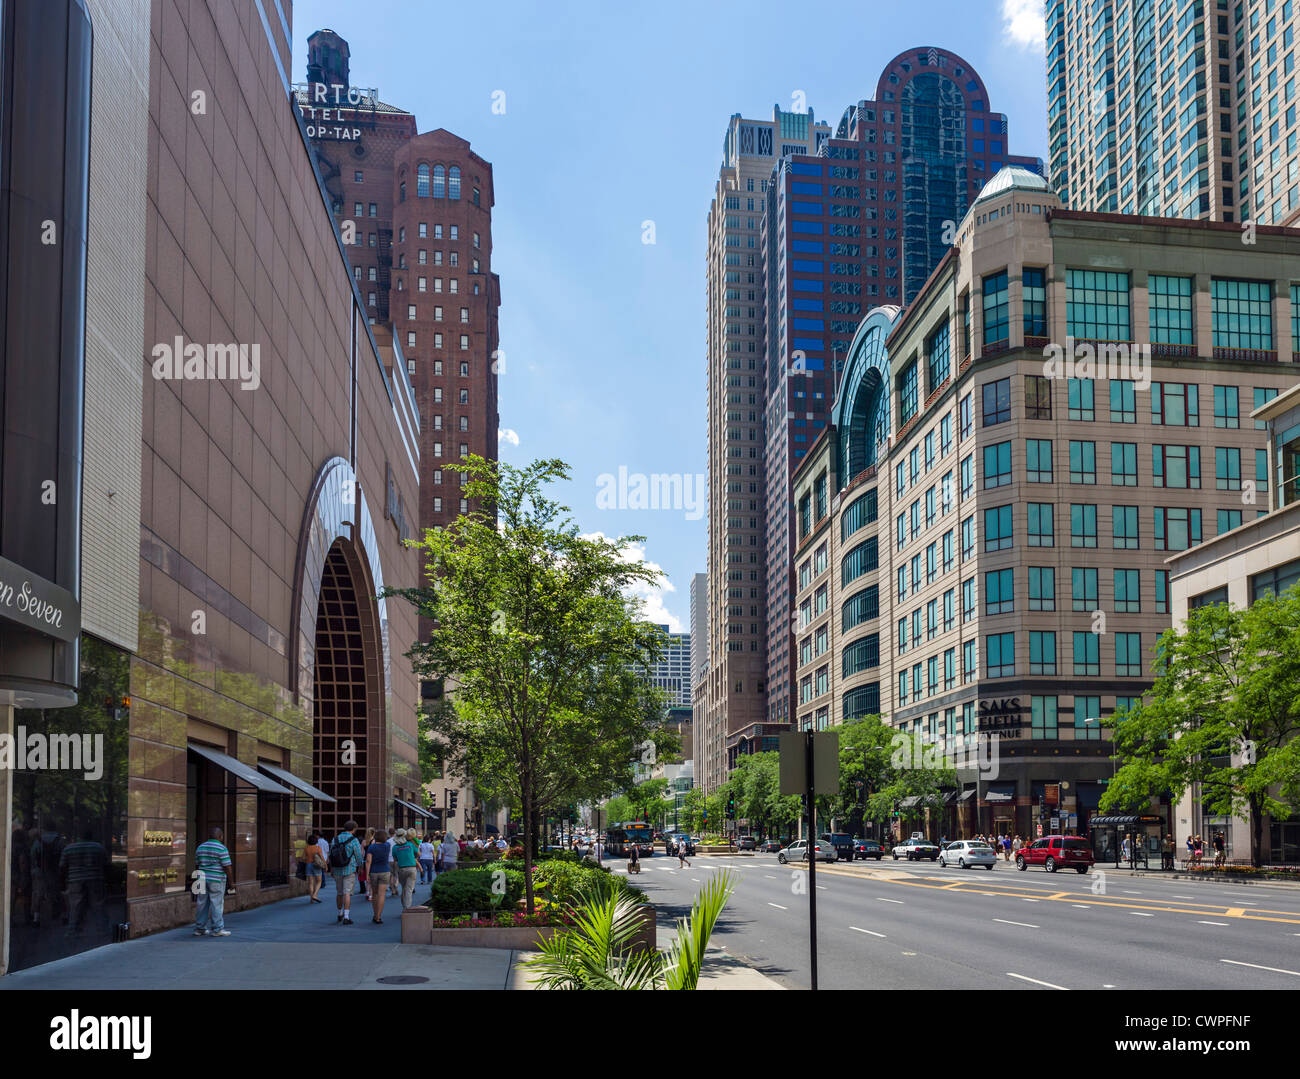 Boutiques de la Magnificent Mile avec magasin Neiman-Marcus à gauche et Saks Fifth Avenue à droite, N Michigan Ave, Chicago, IL, USA Banque D'Images